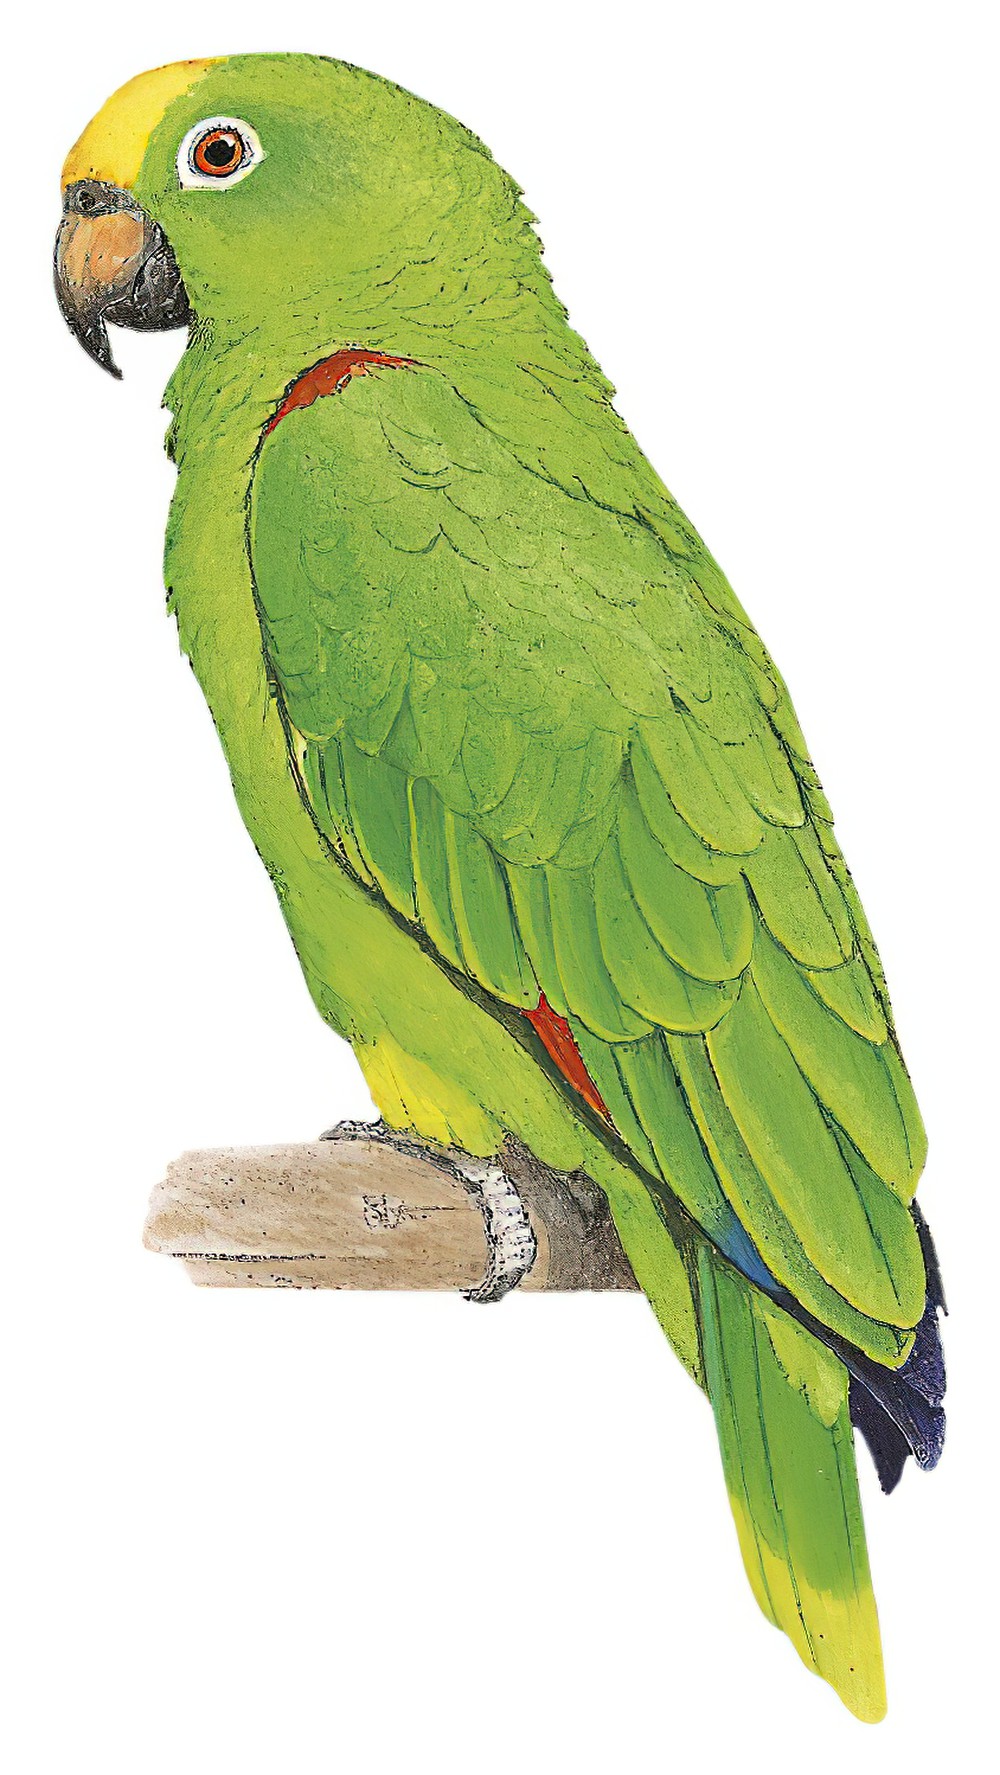 Yellow-crowned Parrot / Amazona ochrocephala